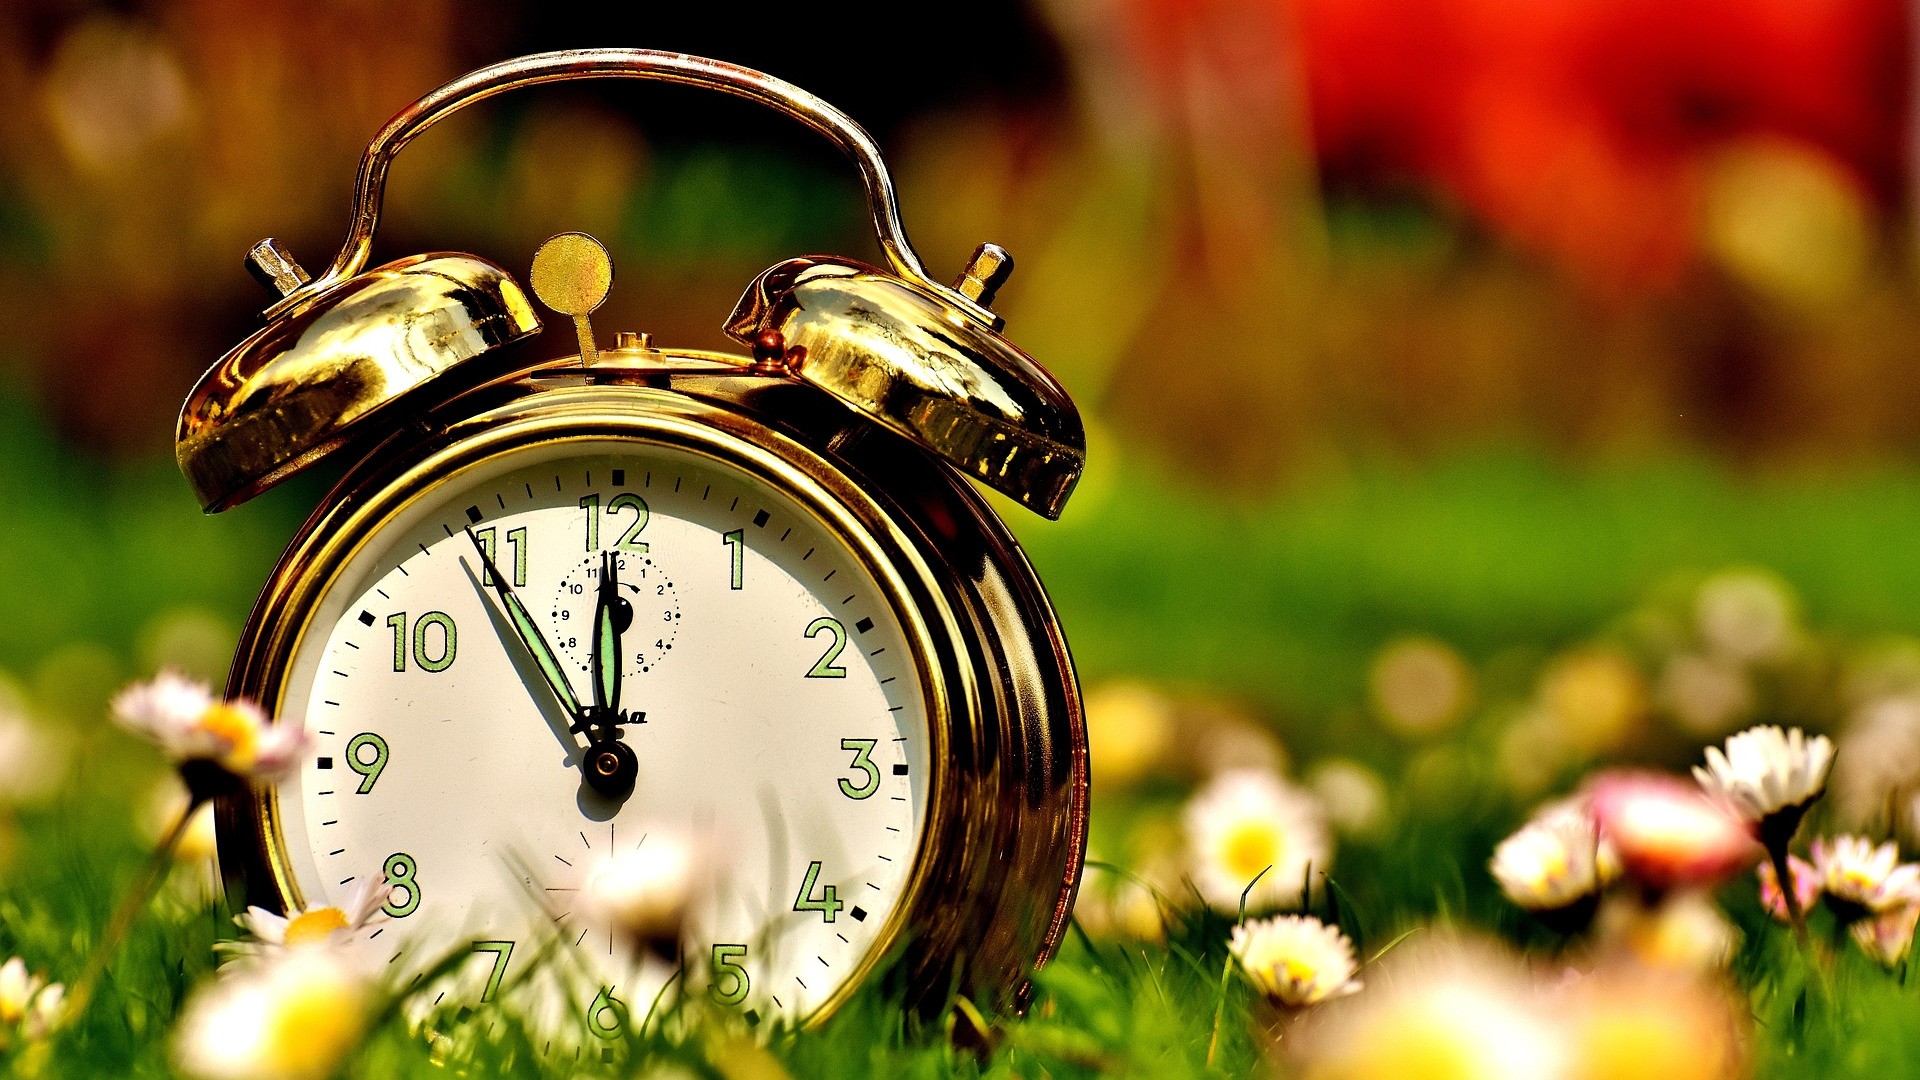 Alarm clock in a field of flowers